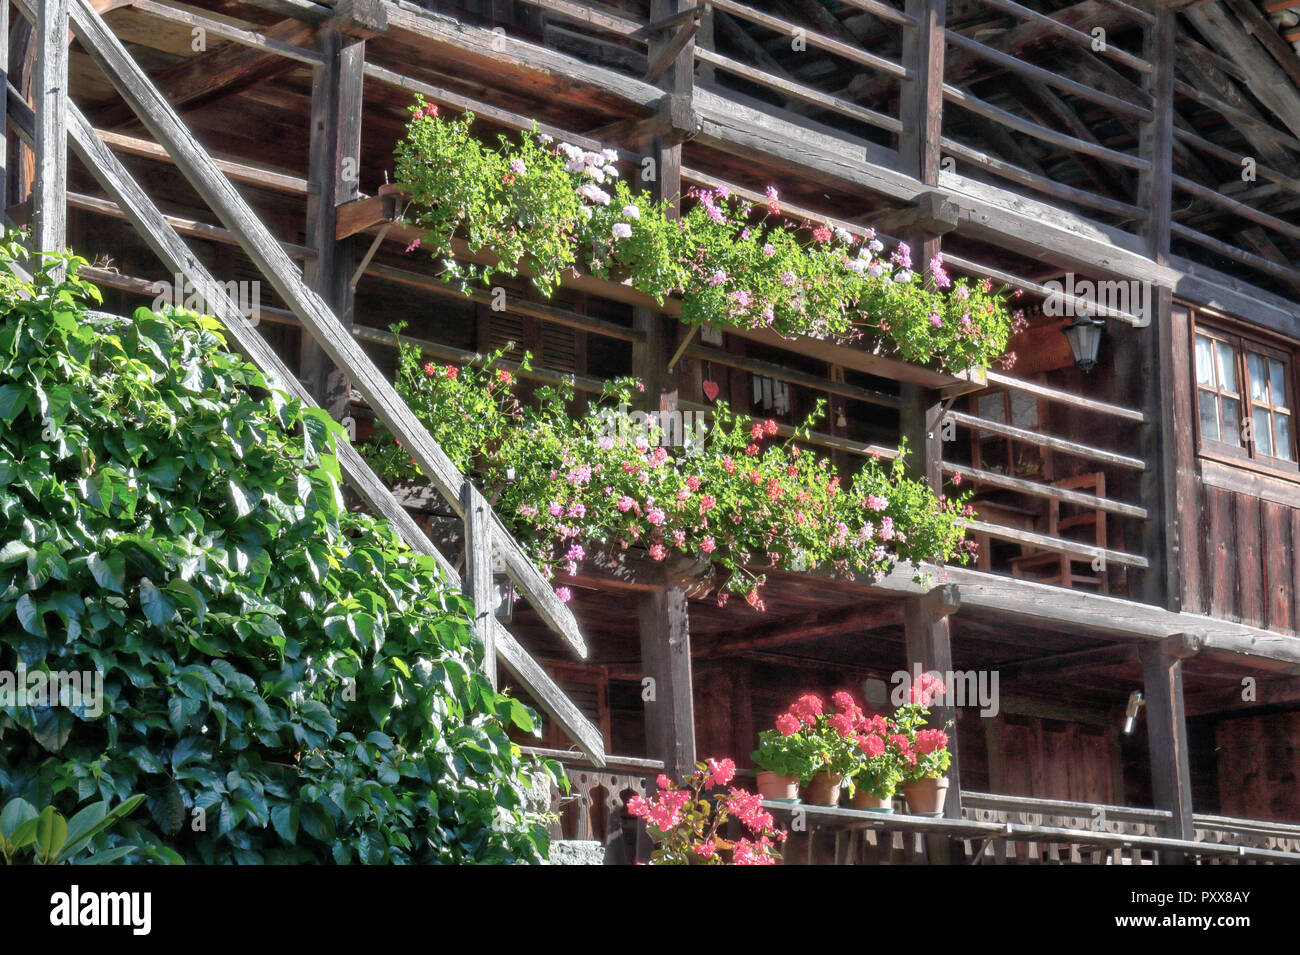 Eine typische Walser Lodge, aus Stein und mit hölzernen Balkonen mit Blumen Pflanzer und Treppenhaus, in Val d'Otro Tal, Alpen, Italien Stockfoto